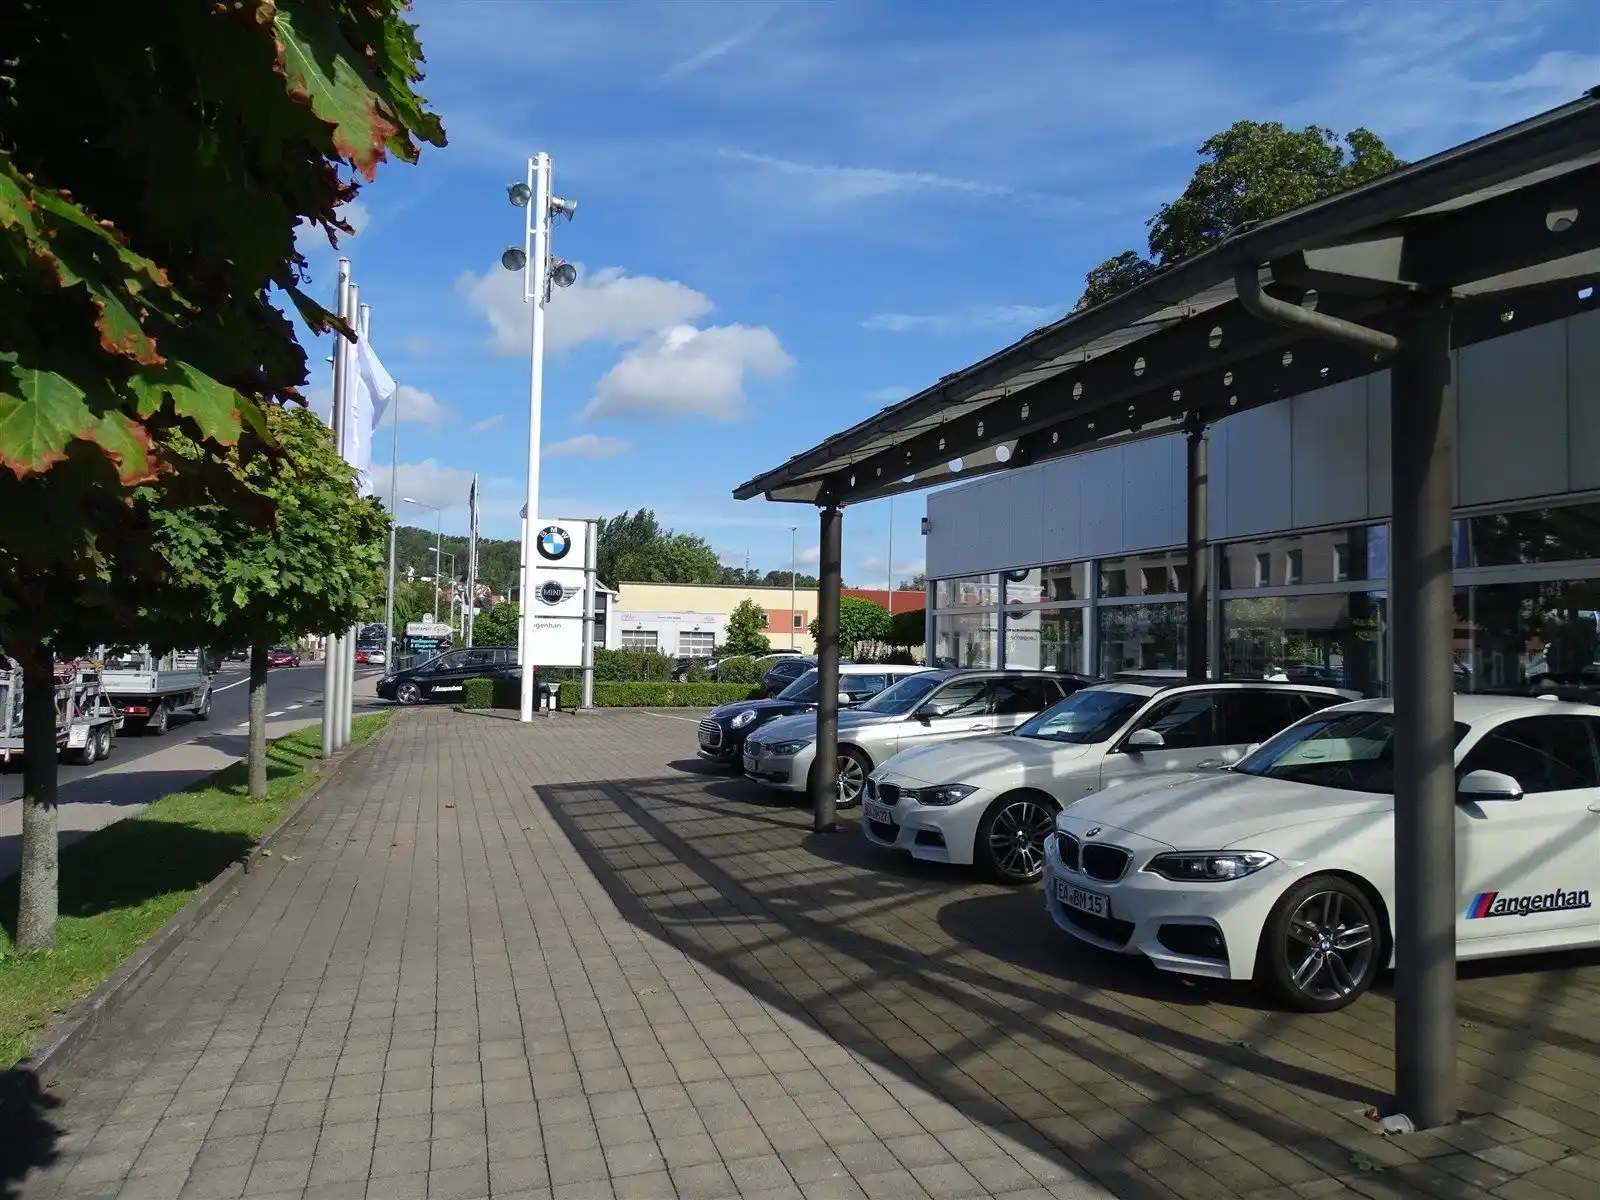 Gutes Autohaus in Eisenach | Unser Autohaus in Eisenach